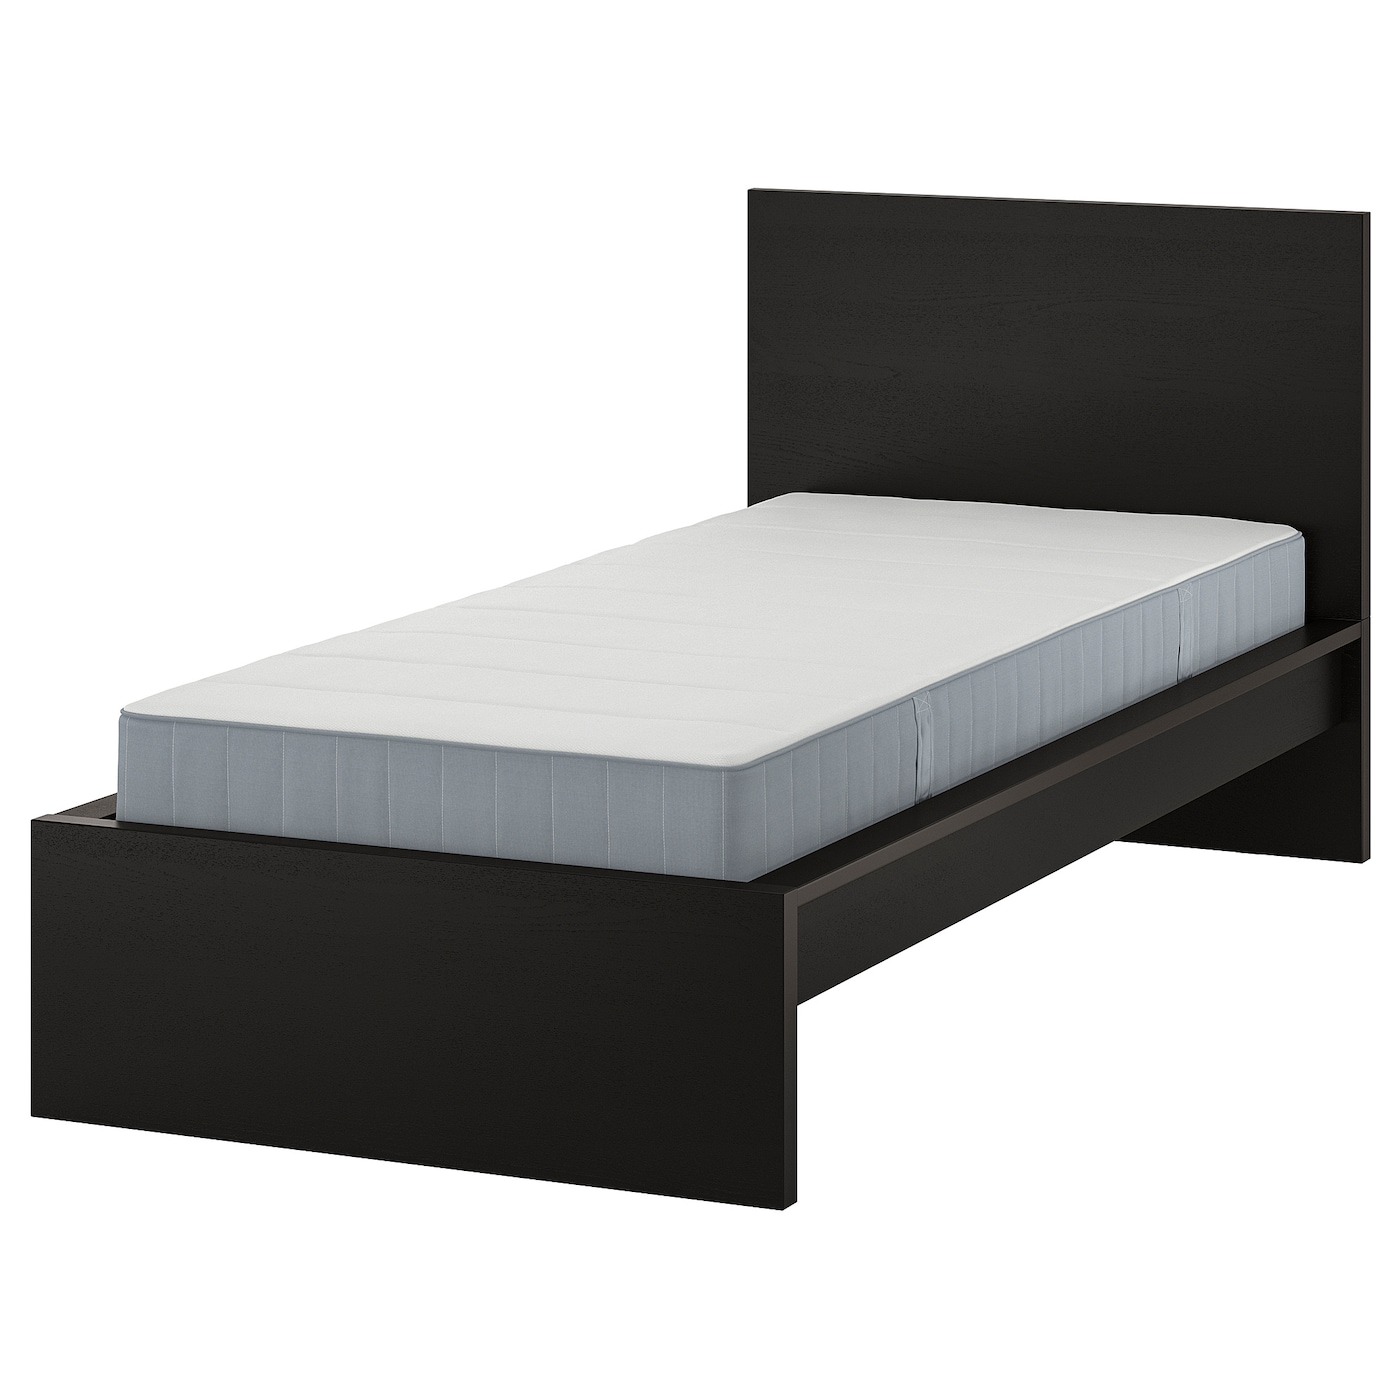 Кровать - IKEA MALM, 200х90 см, матрас жесткий, черный, МАЛЬМ ИКЕА